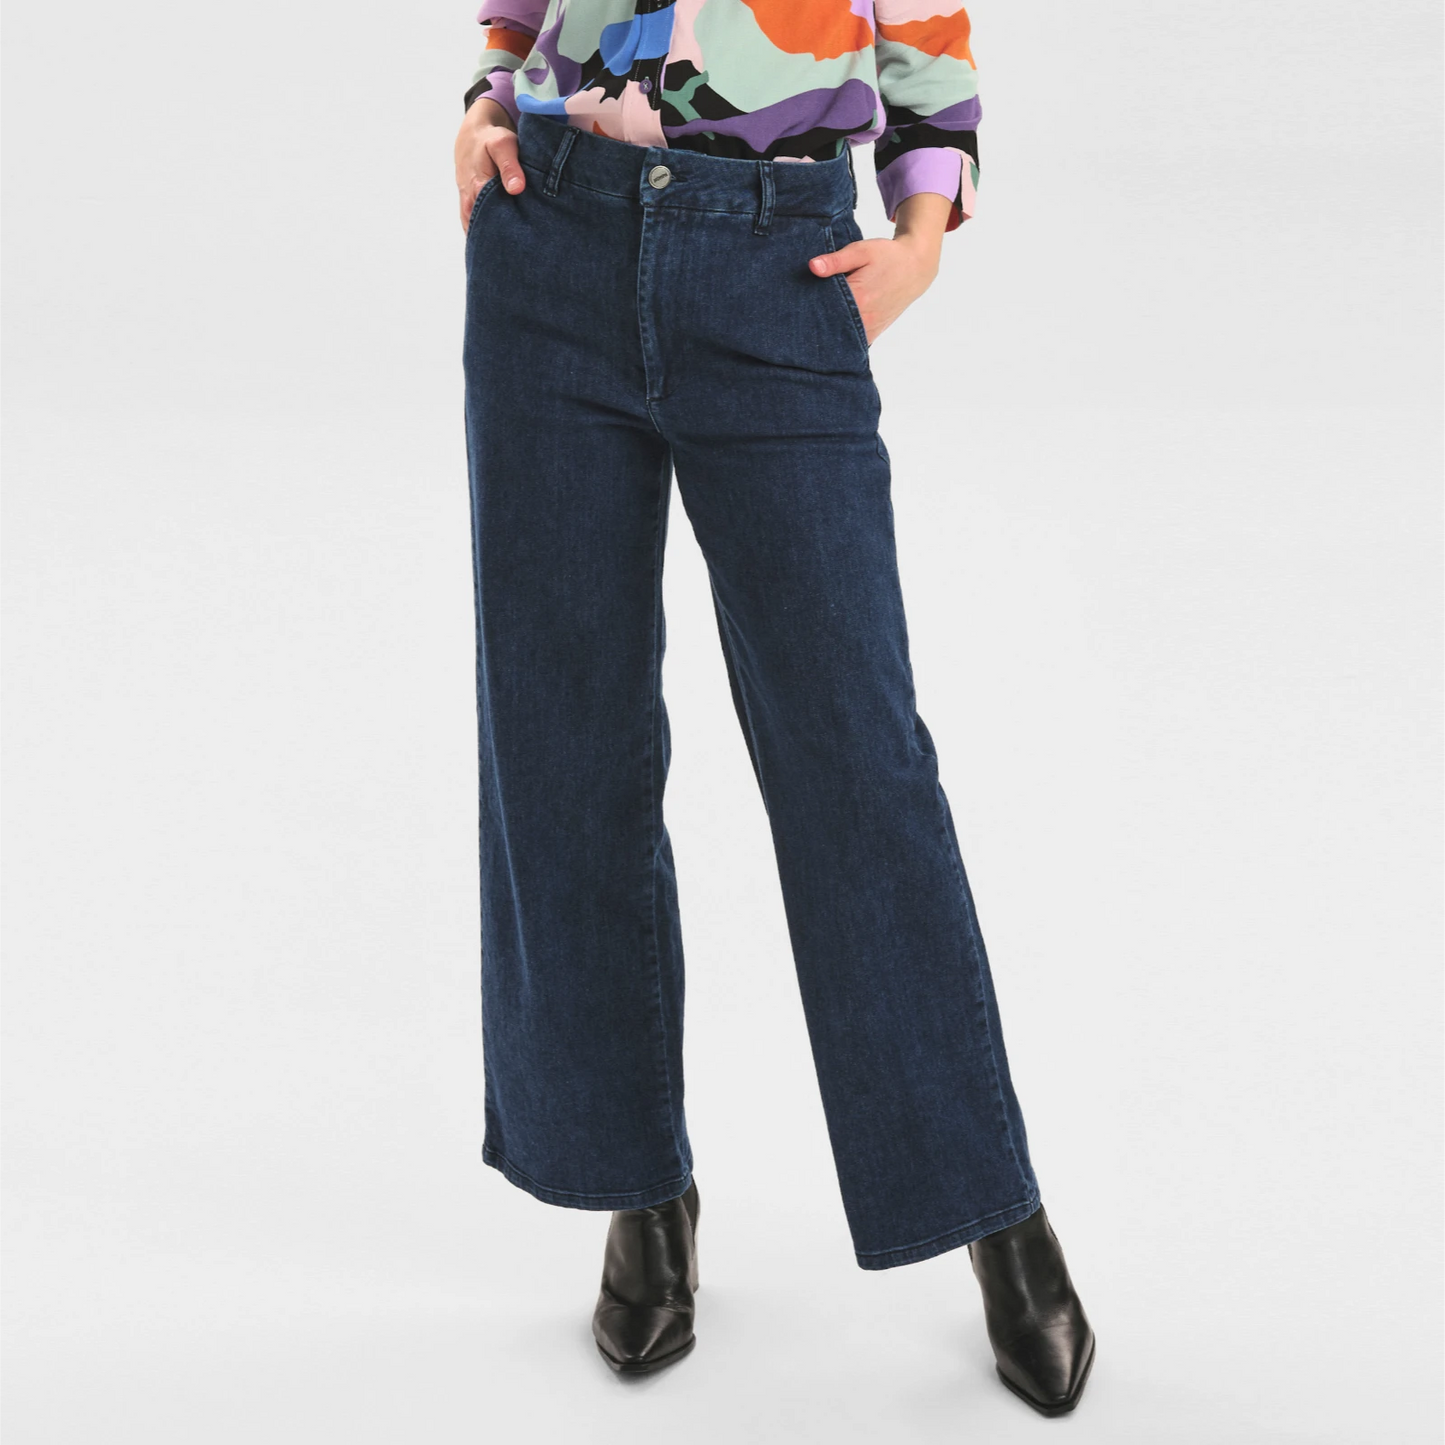 Nuamber jeans fra Nümph på model